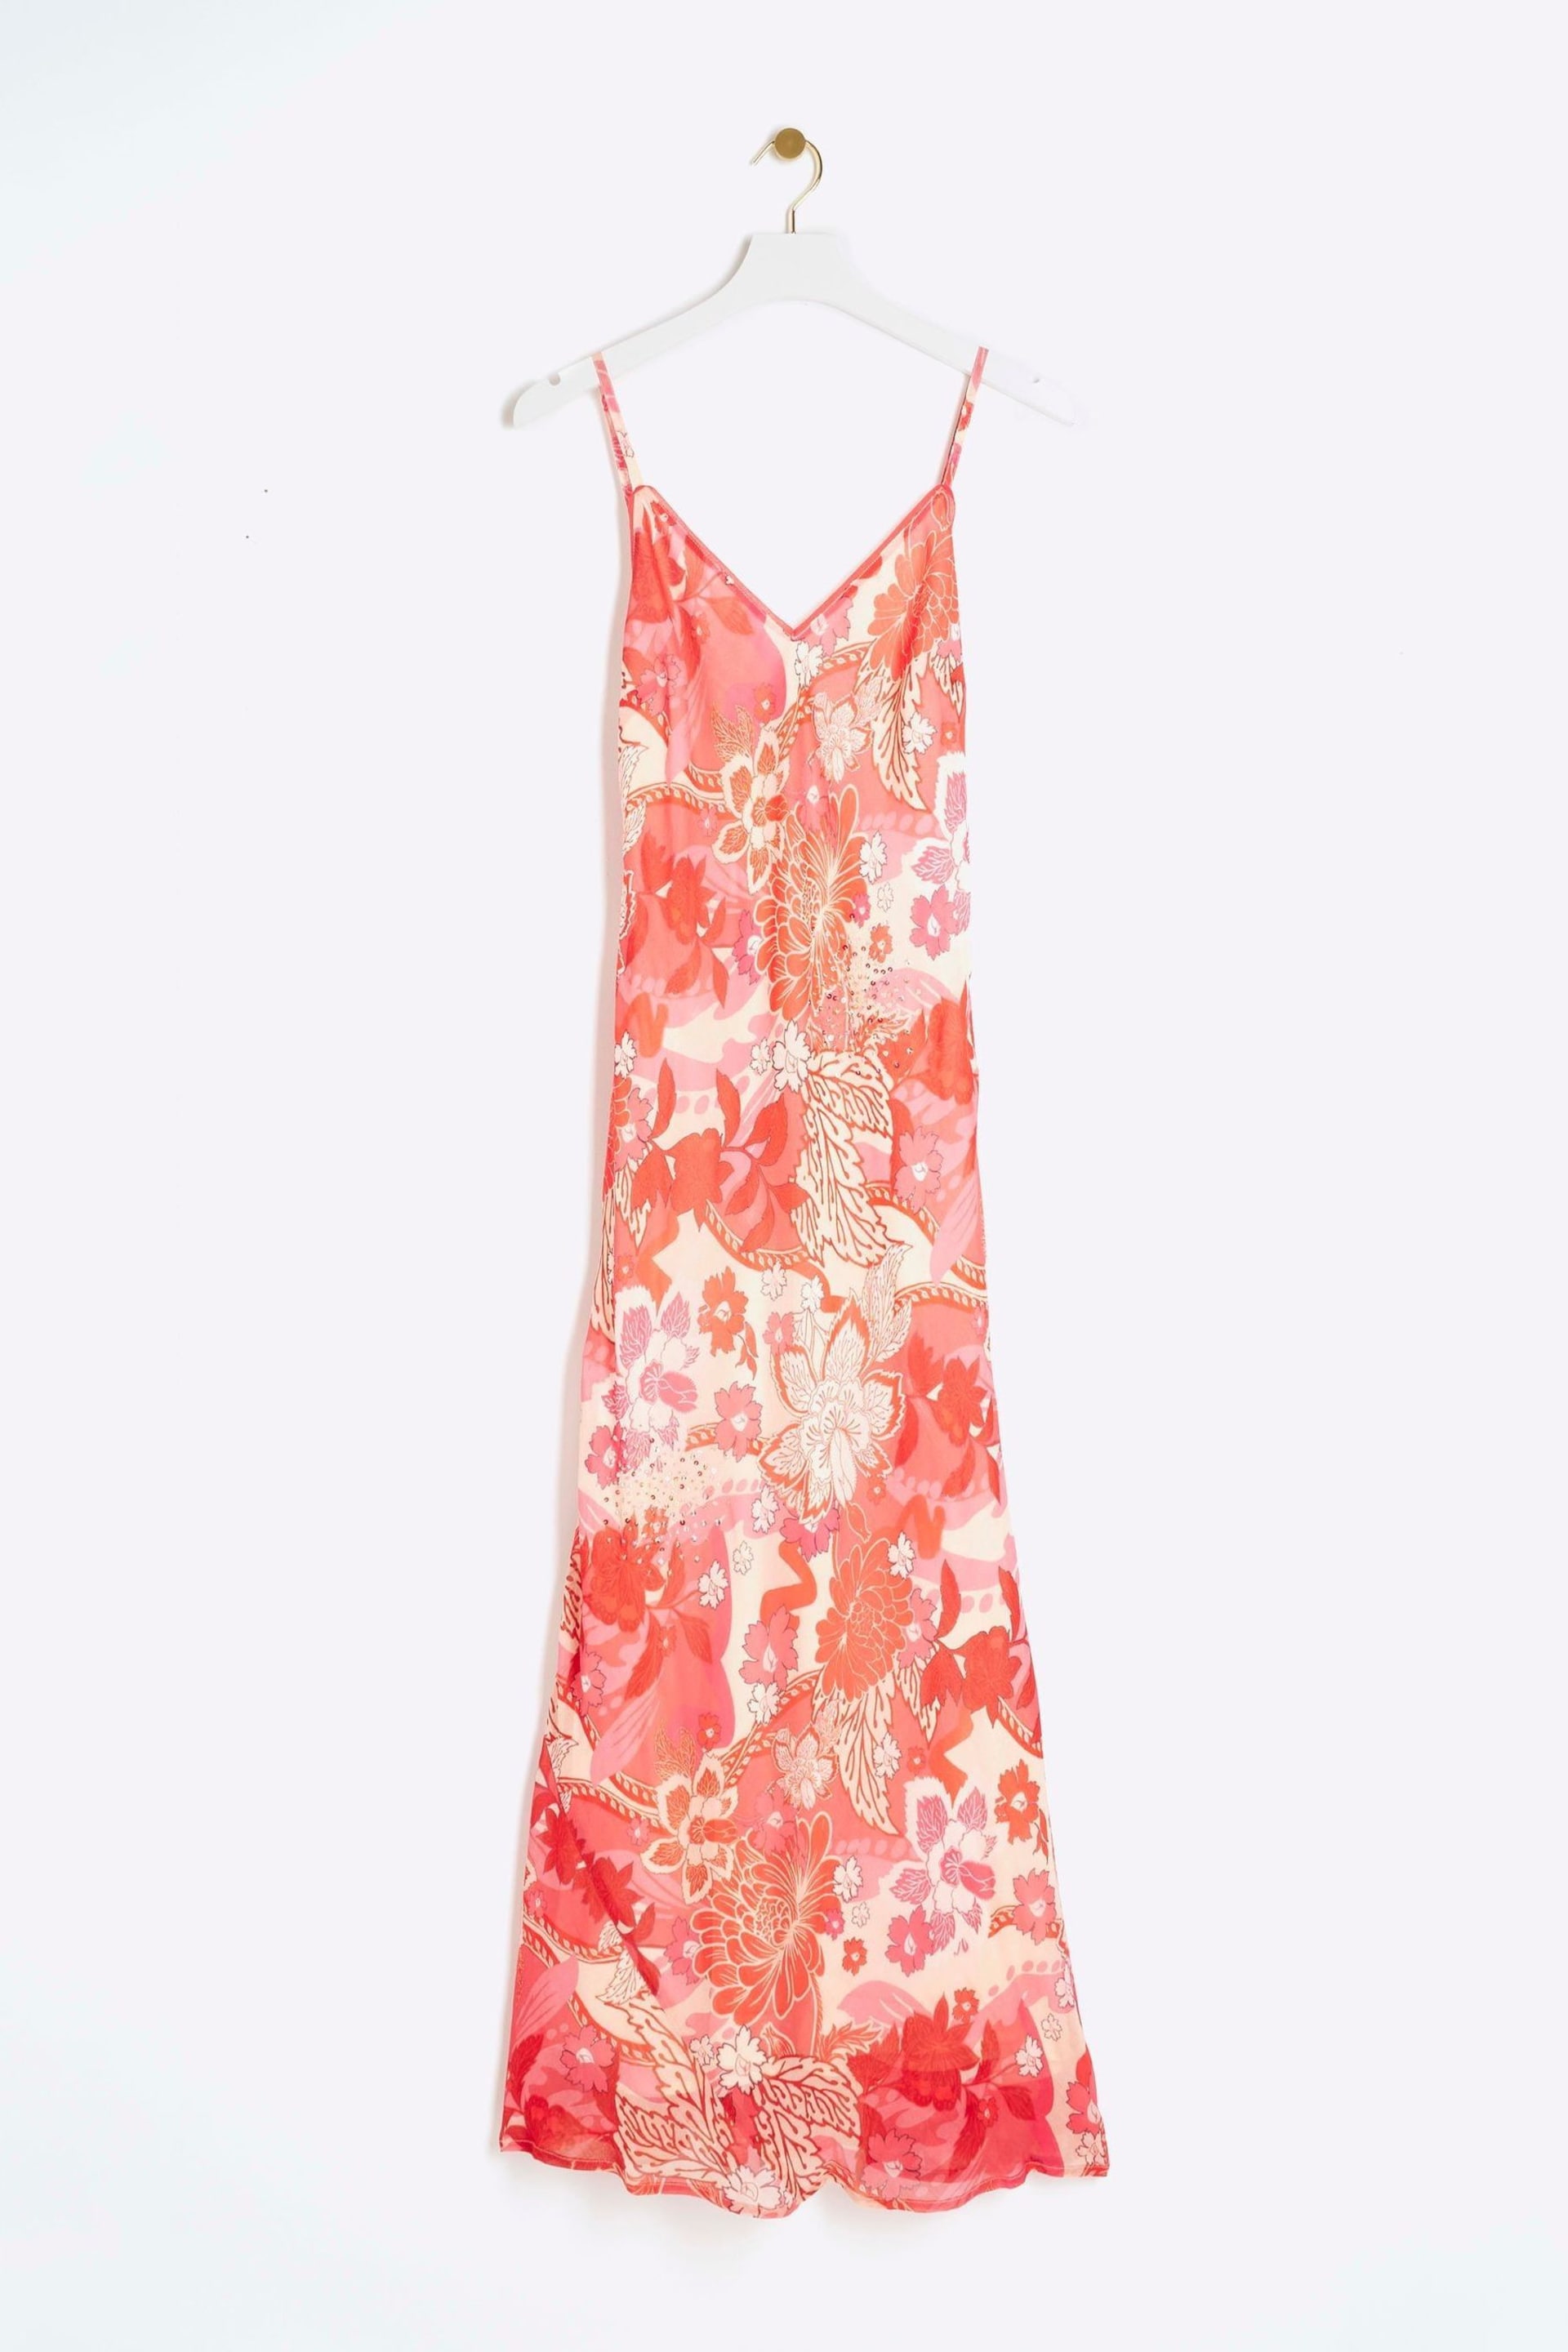 River Island Pink Embellished Leopard Print Slip Dress - Image 5 of 5